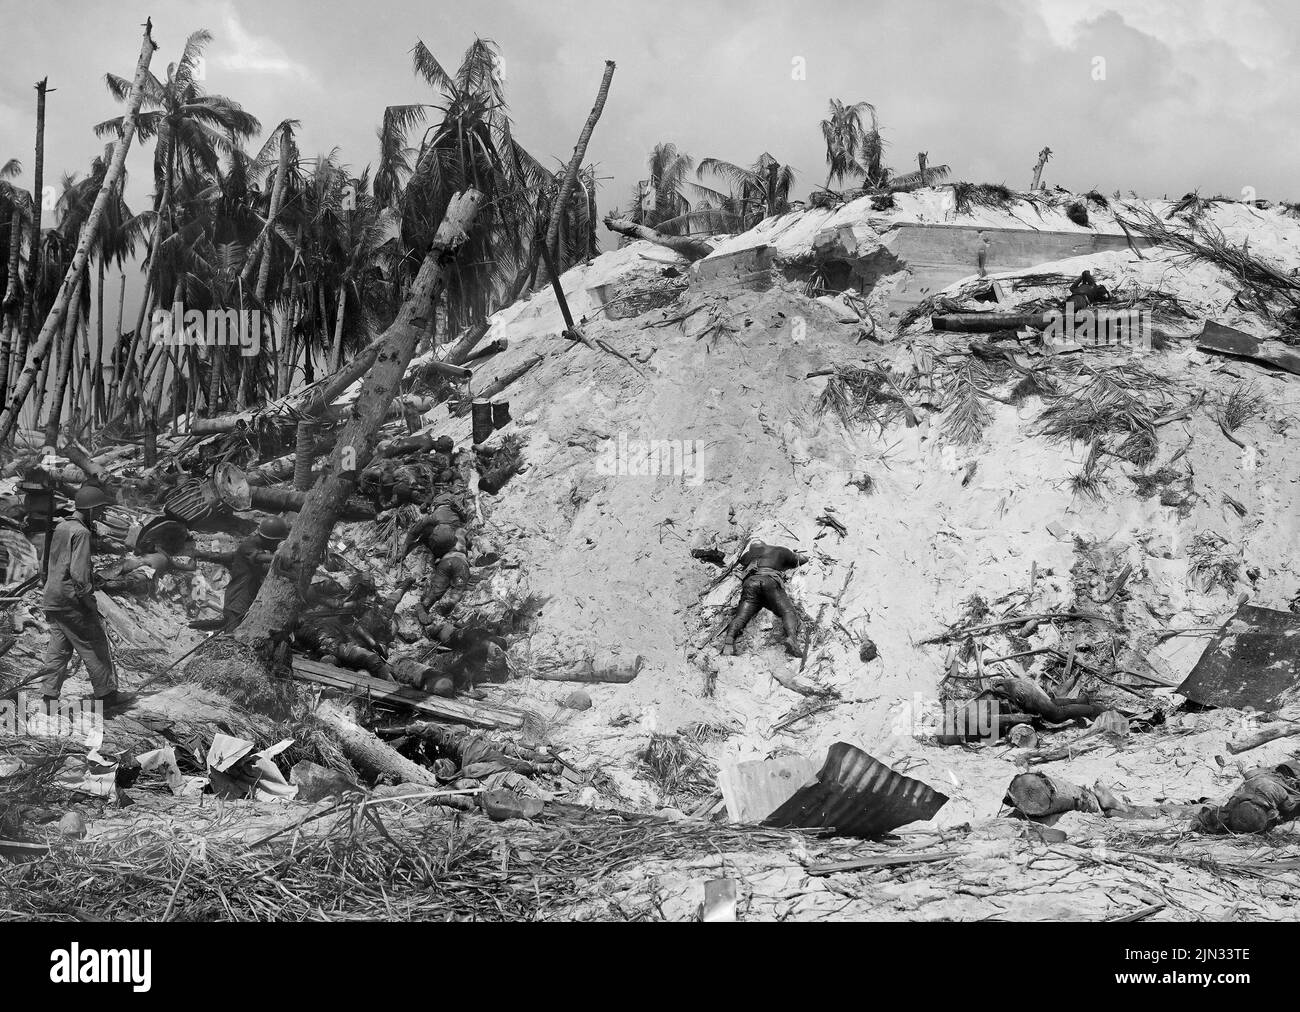 Una fotografía de soldados japoneses muertos después de la batalla de Tarawa. Los desembarques en Tarawa fueron parte de la ofensiva estadounidense contra las islas del Pacífico en poder de Japón antes de prepararse para un ataque contra el continente japonés. De las 2636 tropas japonesas en la isla, sólo 17 estaban vivas al final Foto de stock